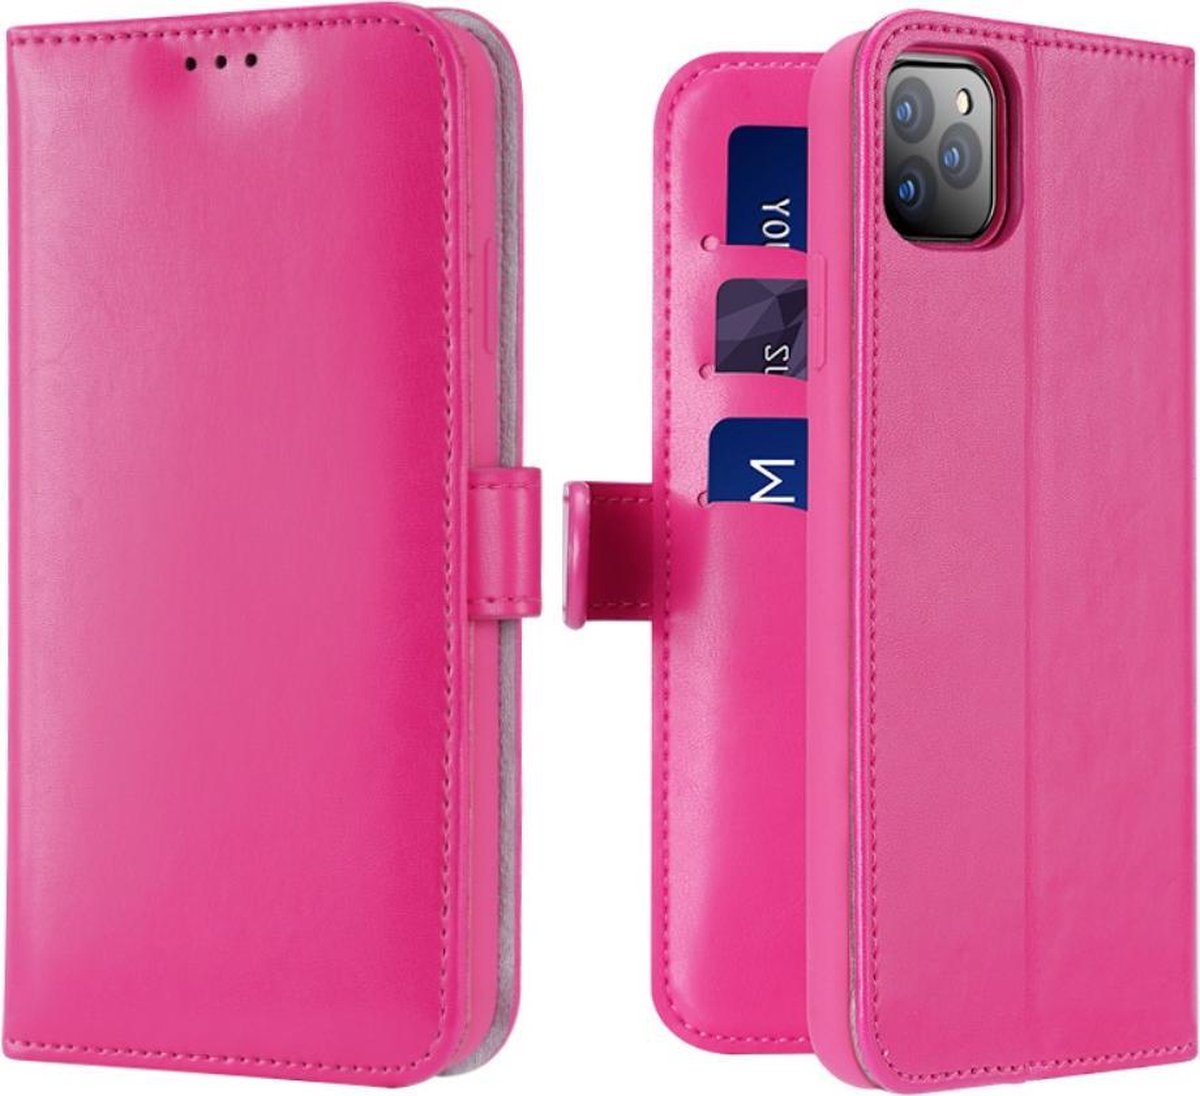 Lederen Wallet Case voor iPhone 11 Pro Max 6.5 inch- Roze - Dux Ducis